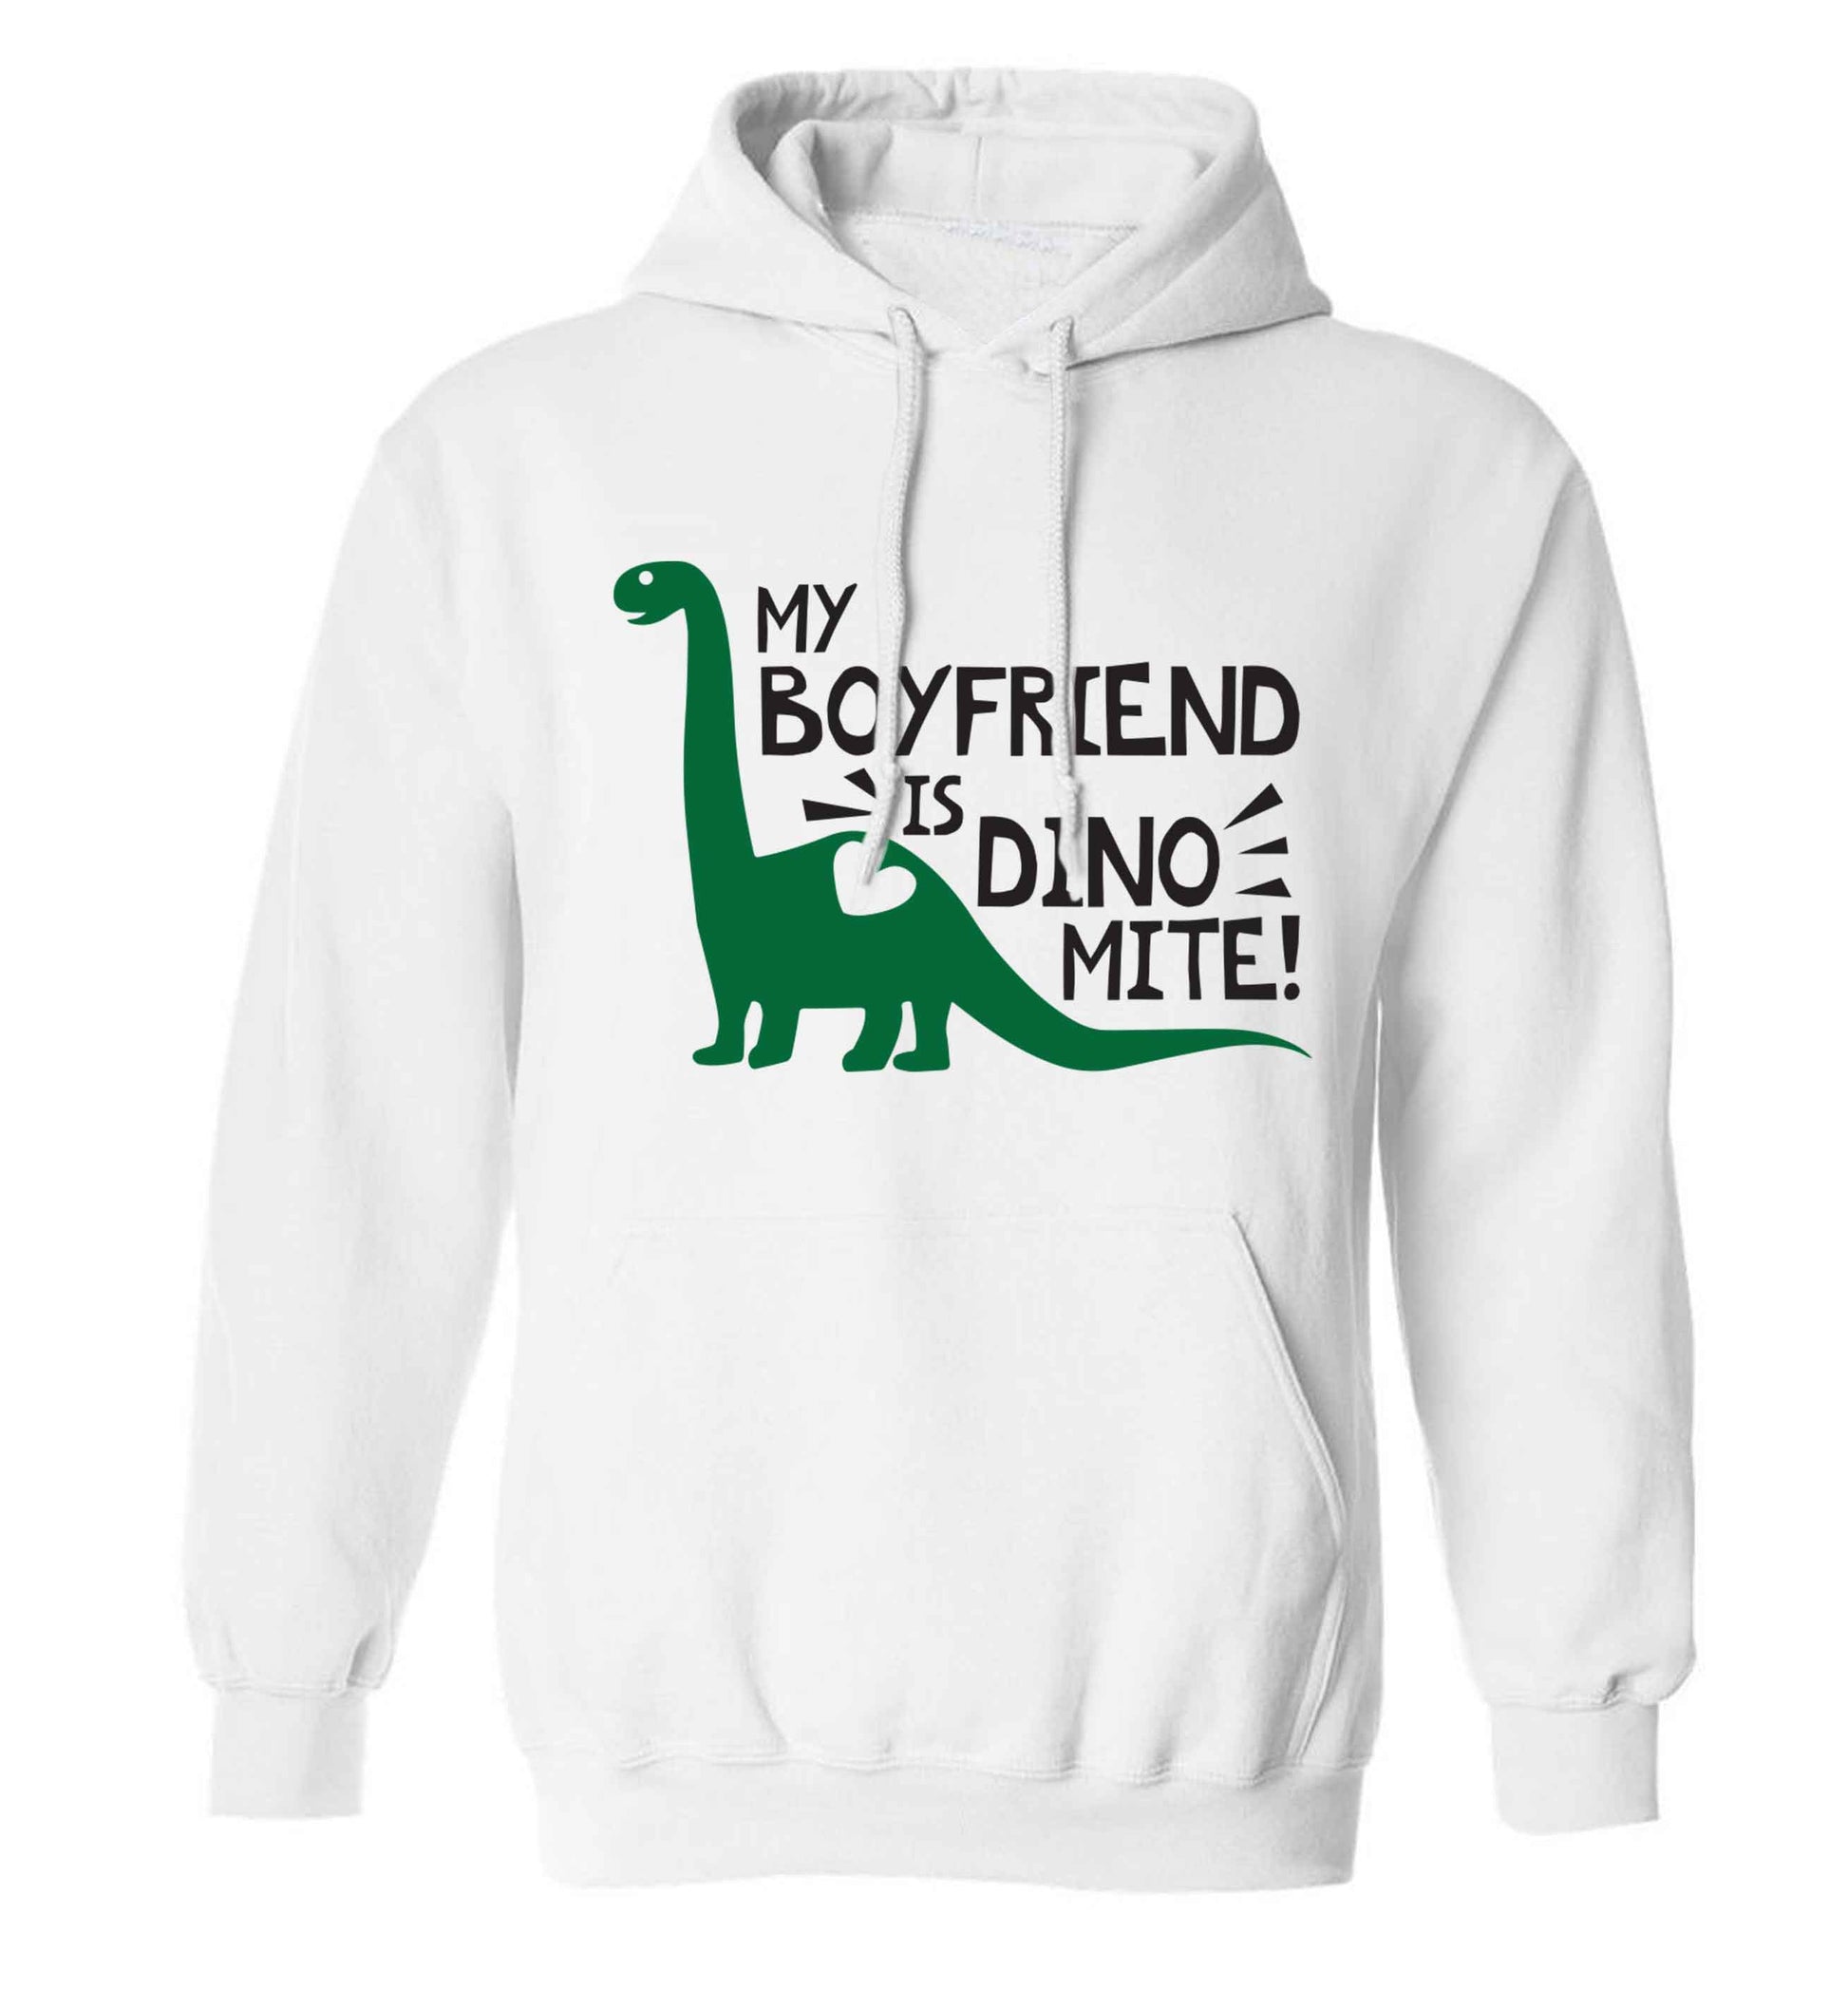 My boyfriend is dinomite! adults unisex white hoodie 2XL